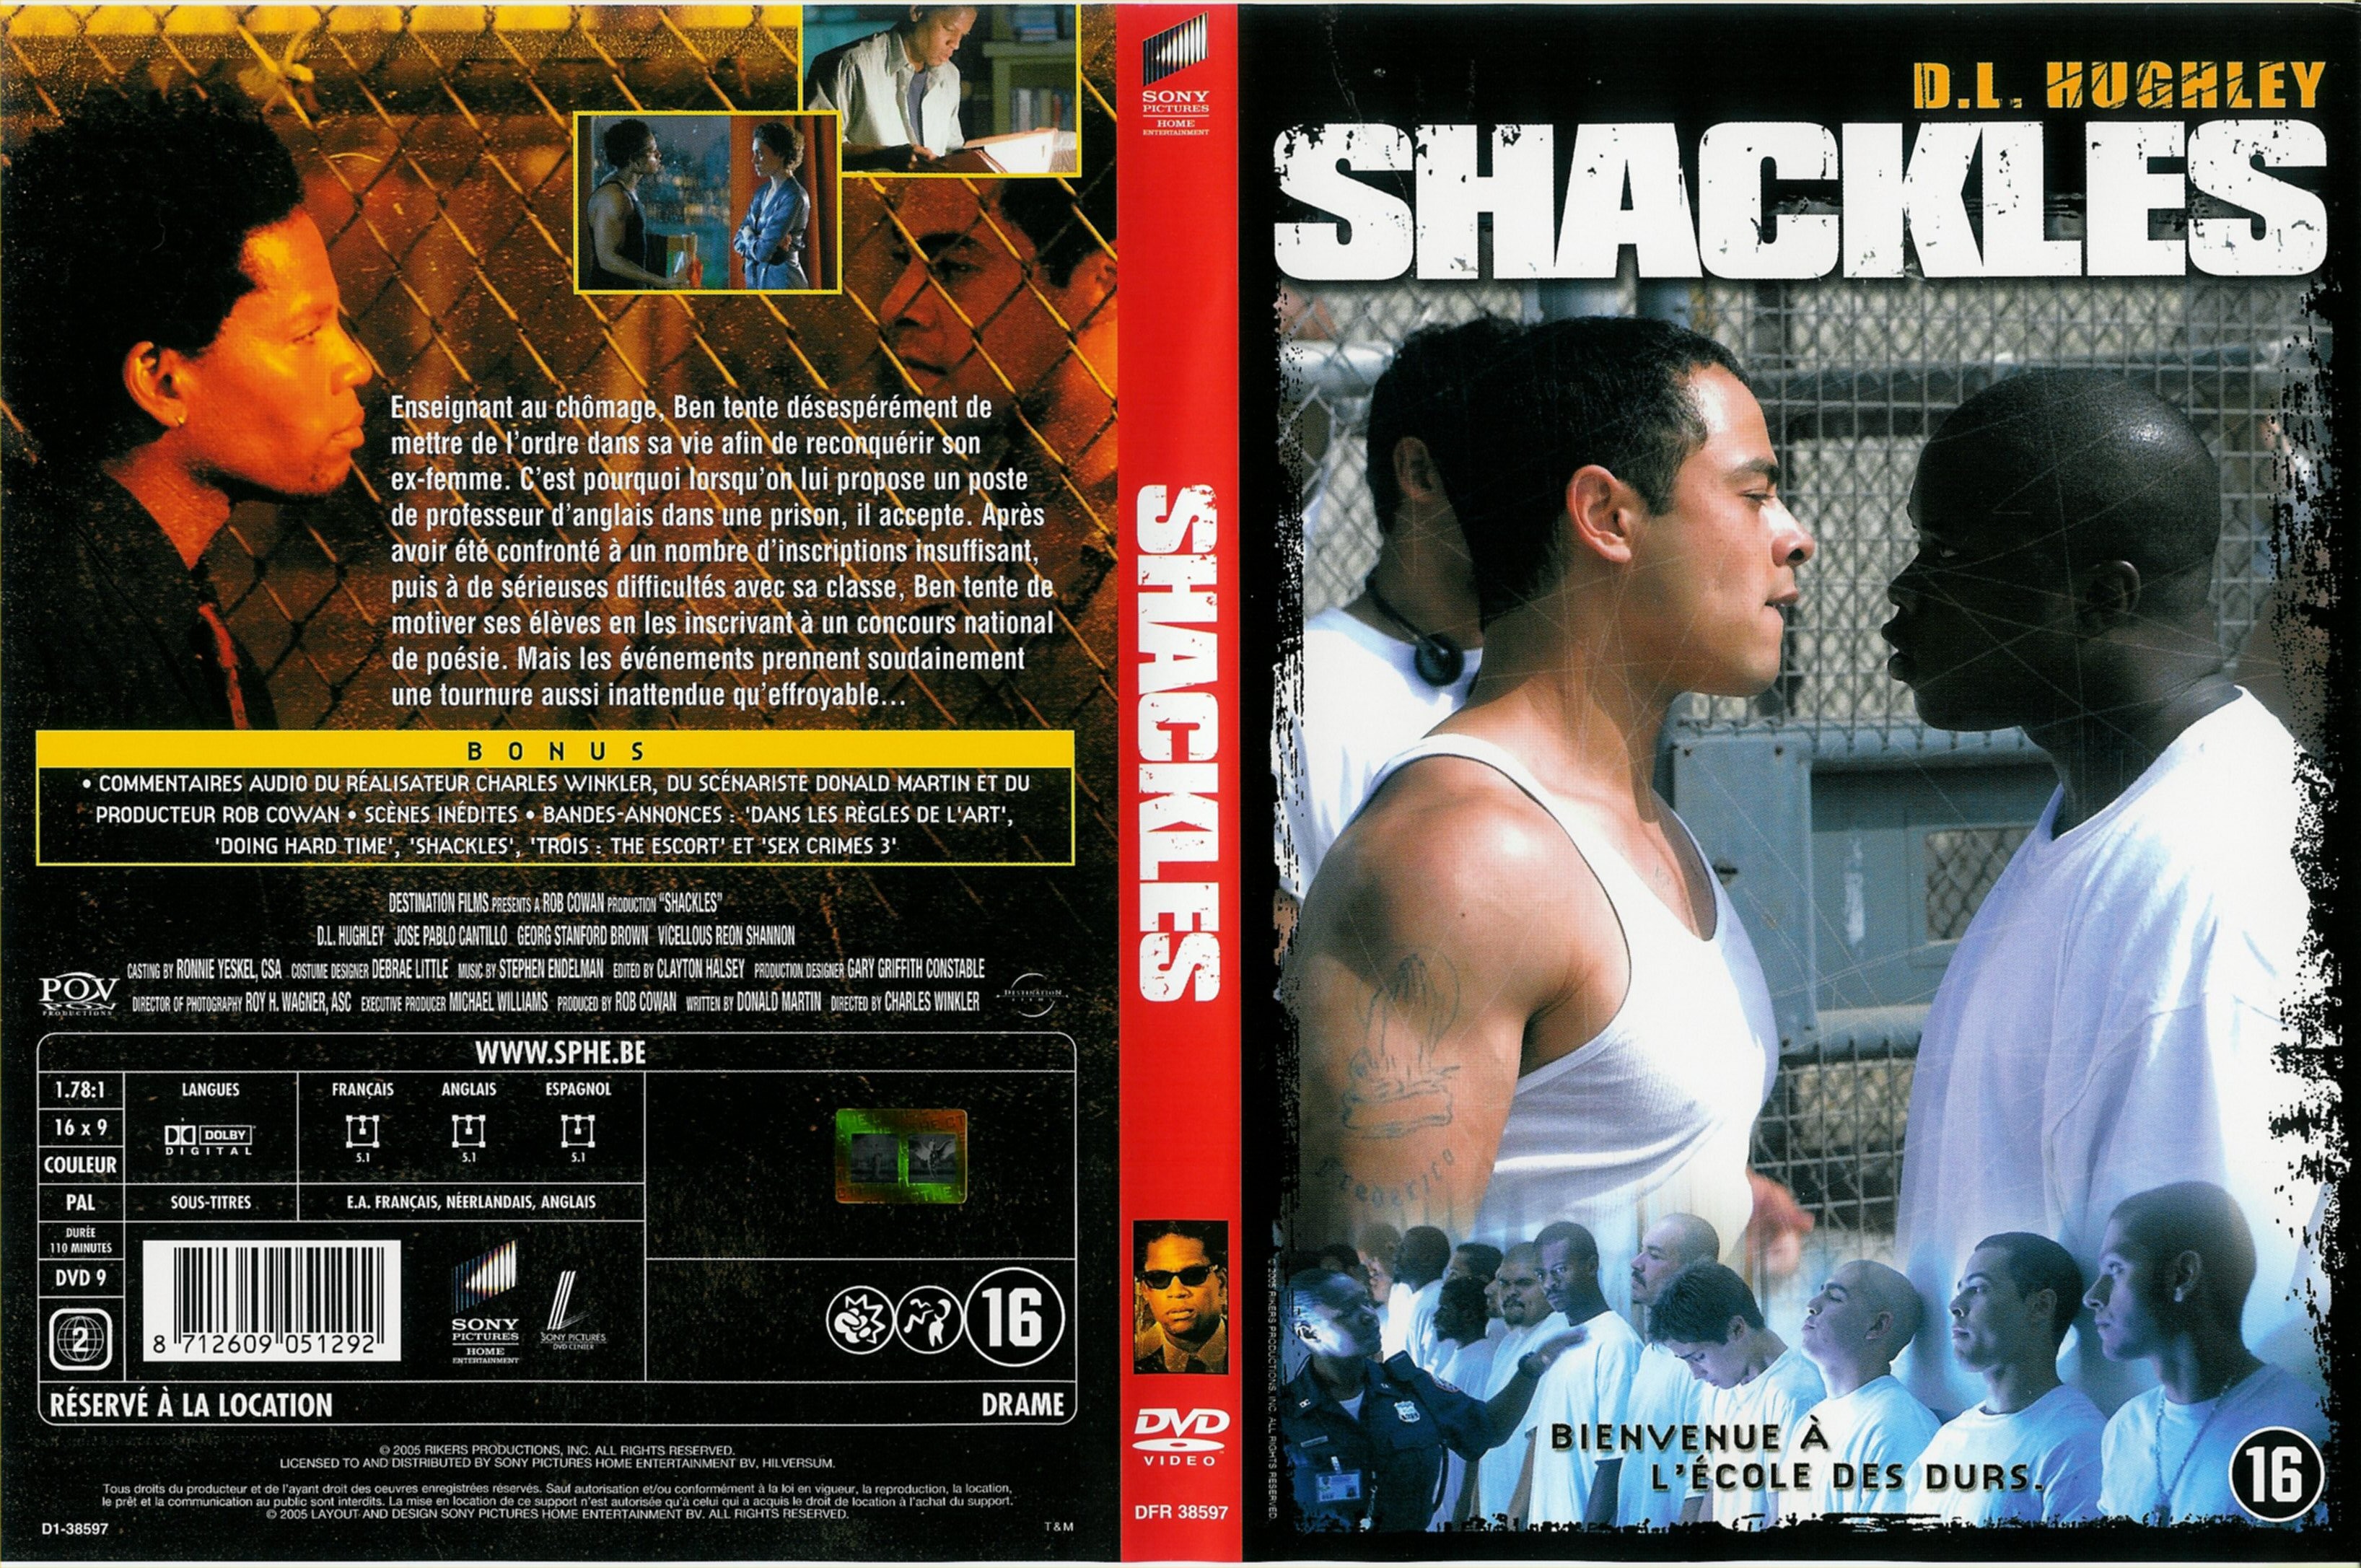 Jaquette DVD Shackles v2